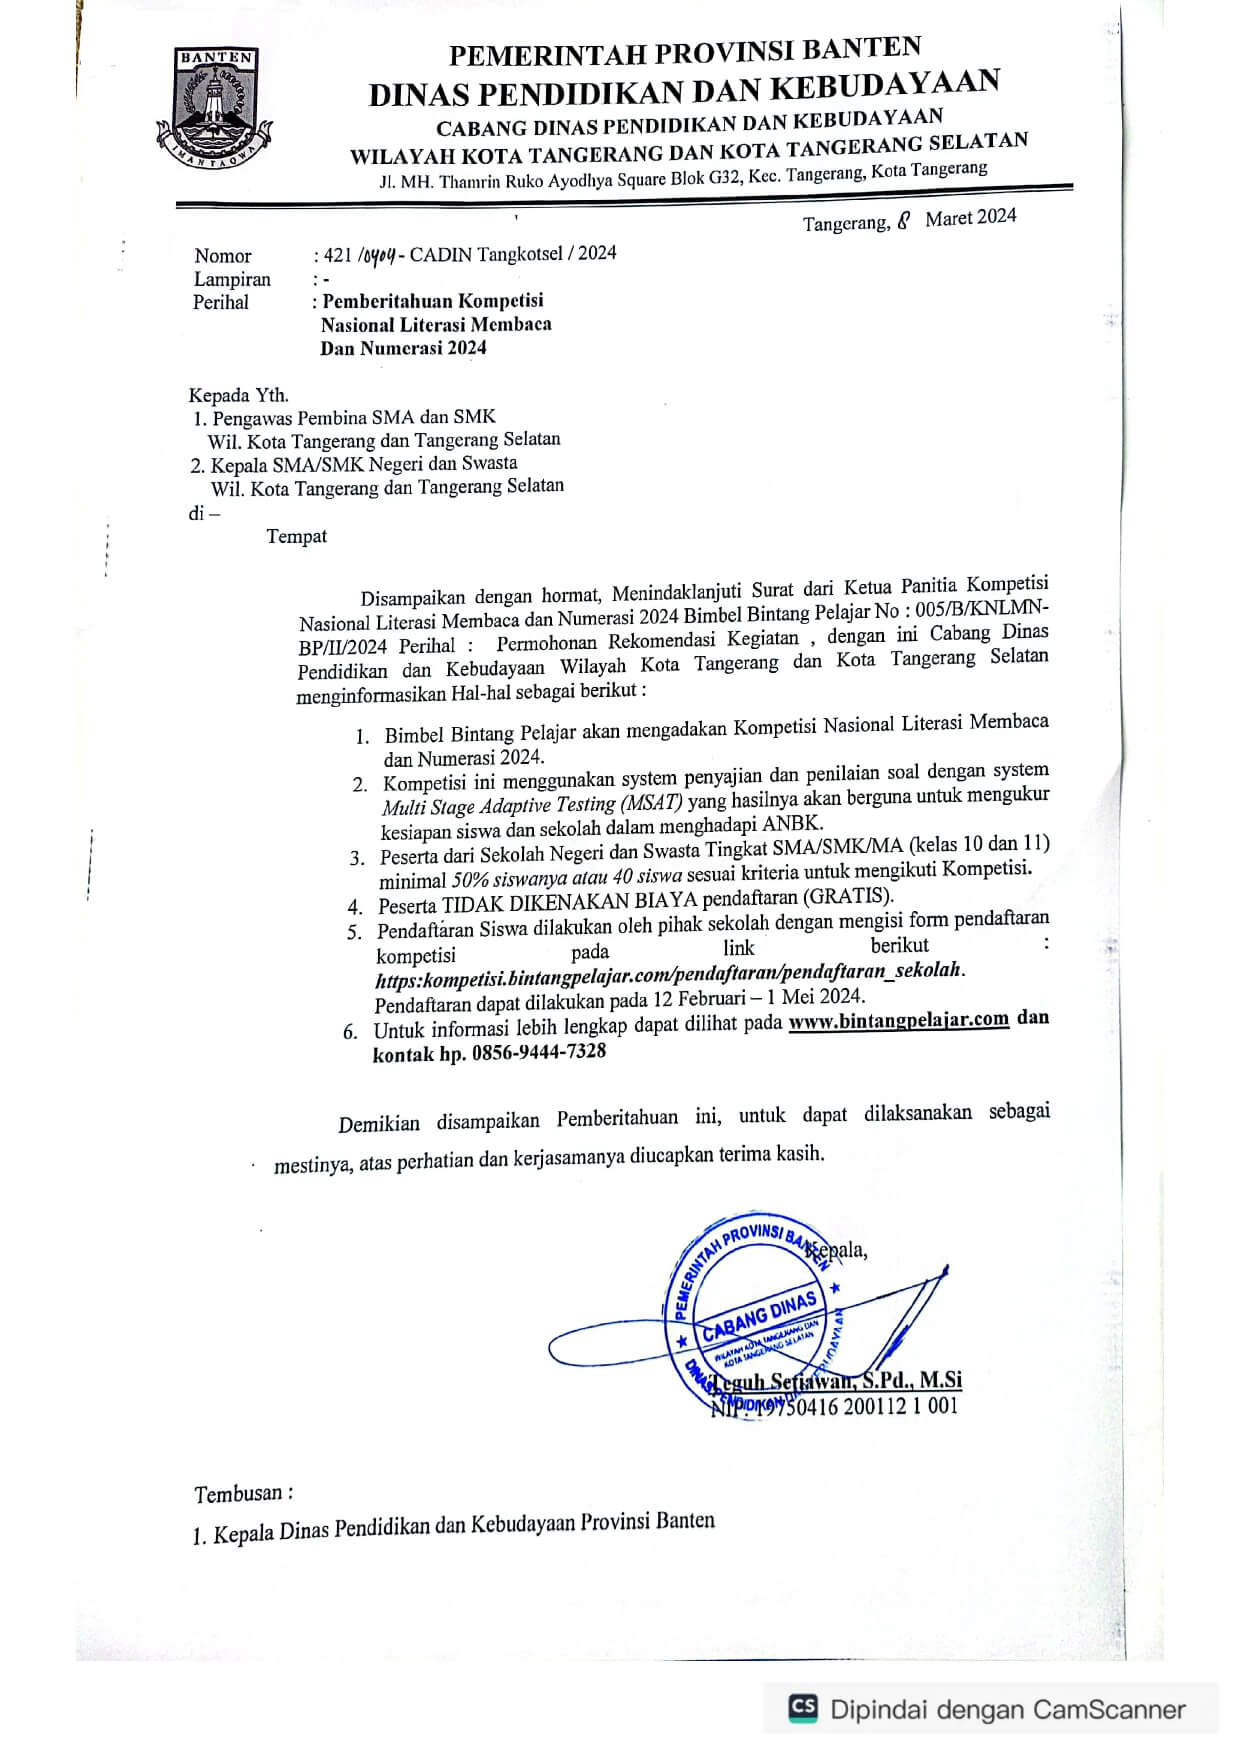 KCD Dikbud Tangkot & Tangsel - Rekomendasi KNLMN 2024